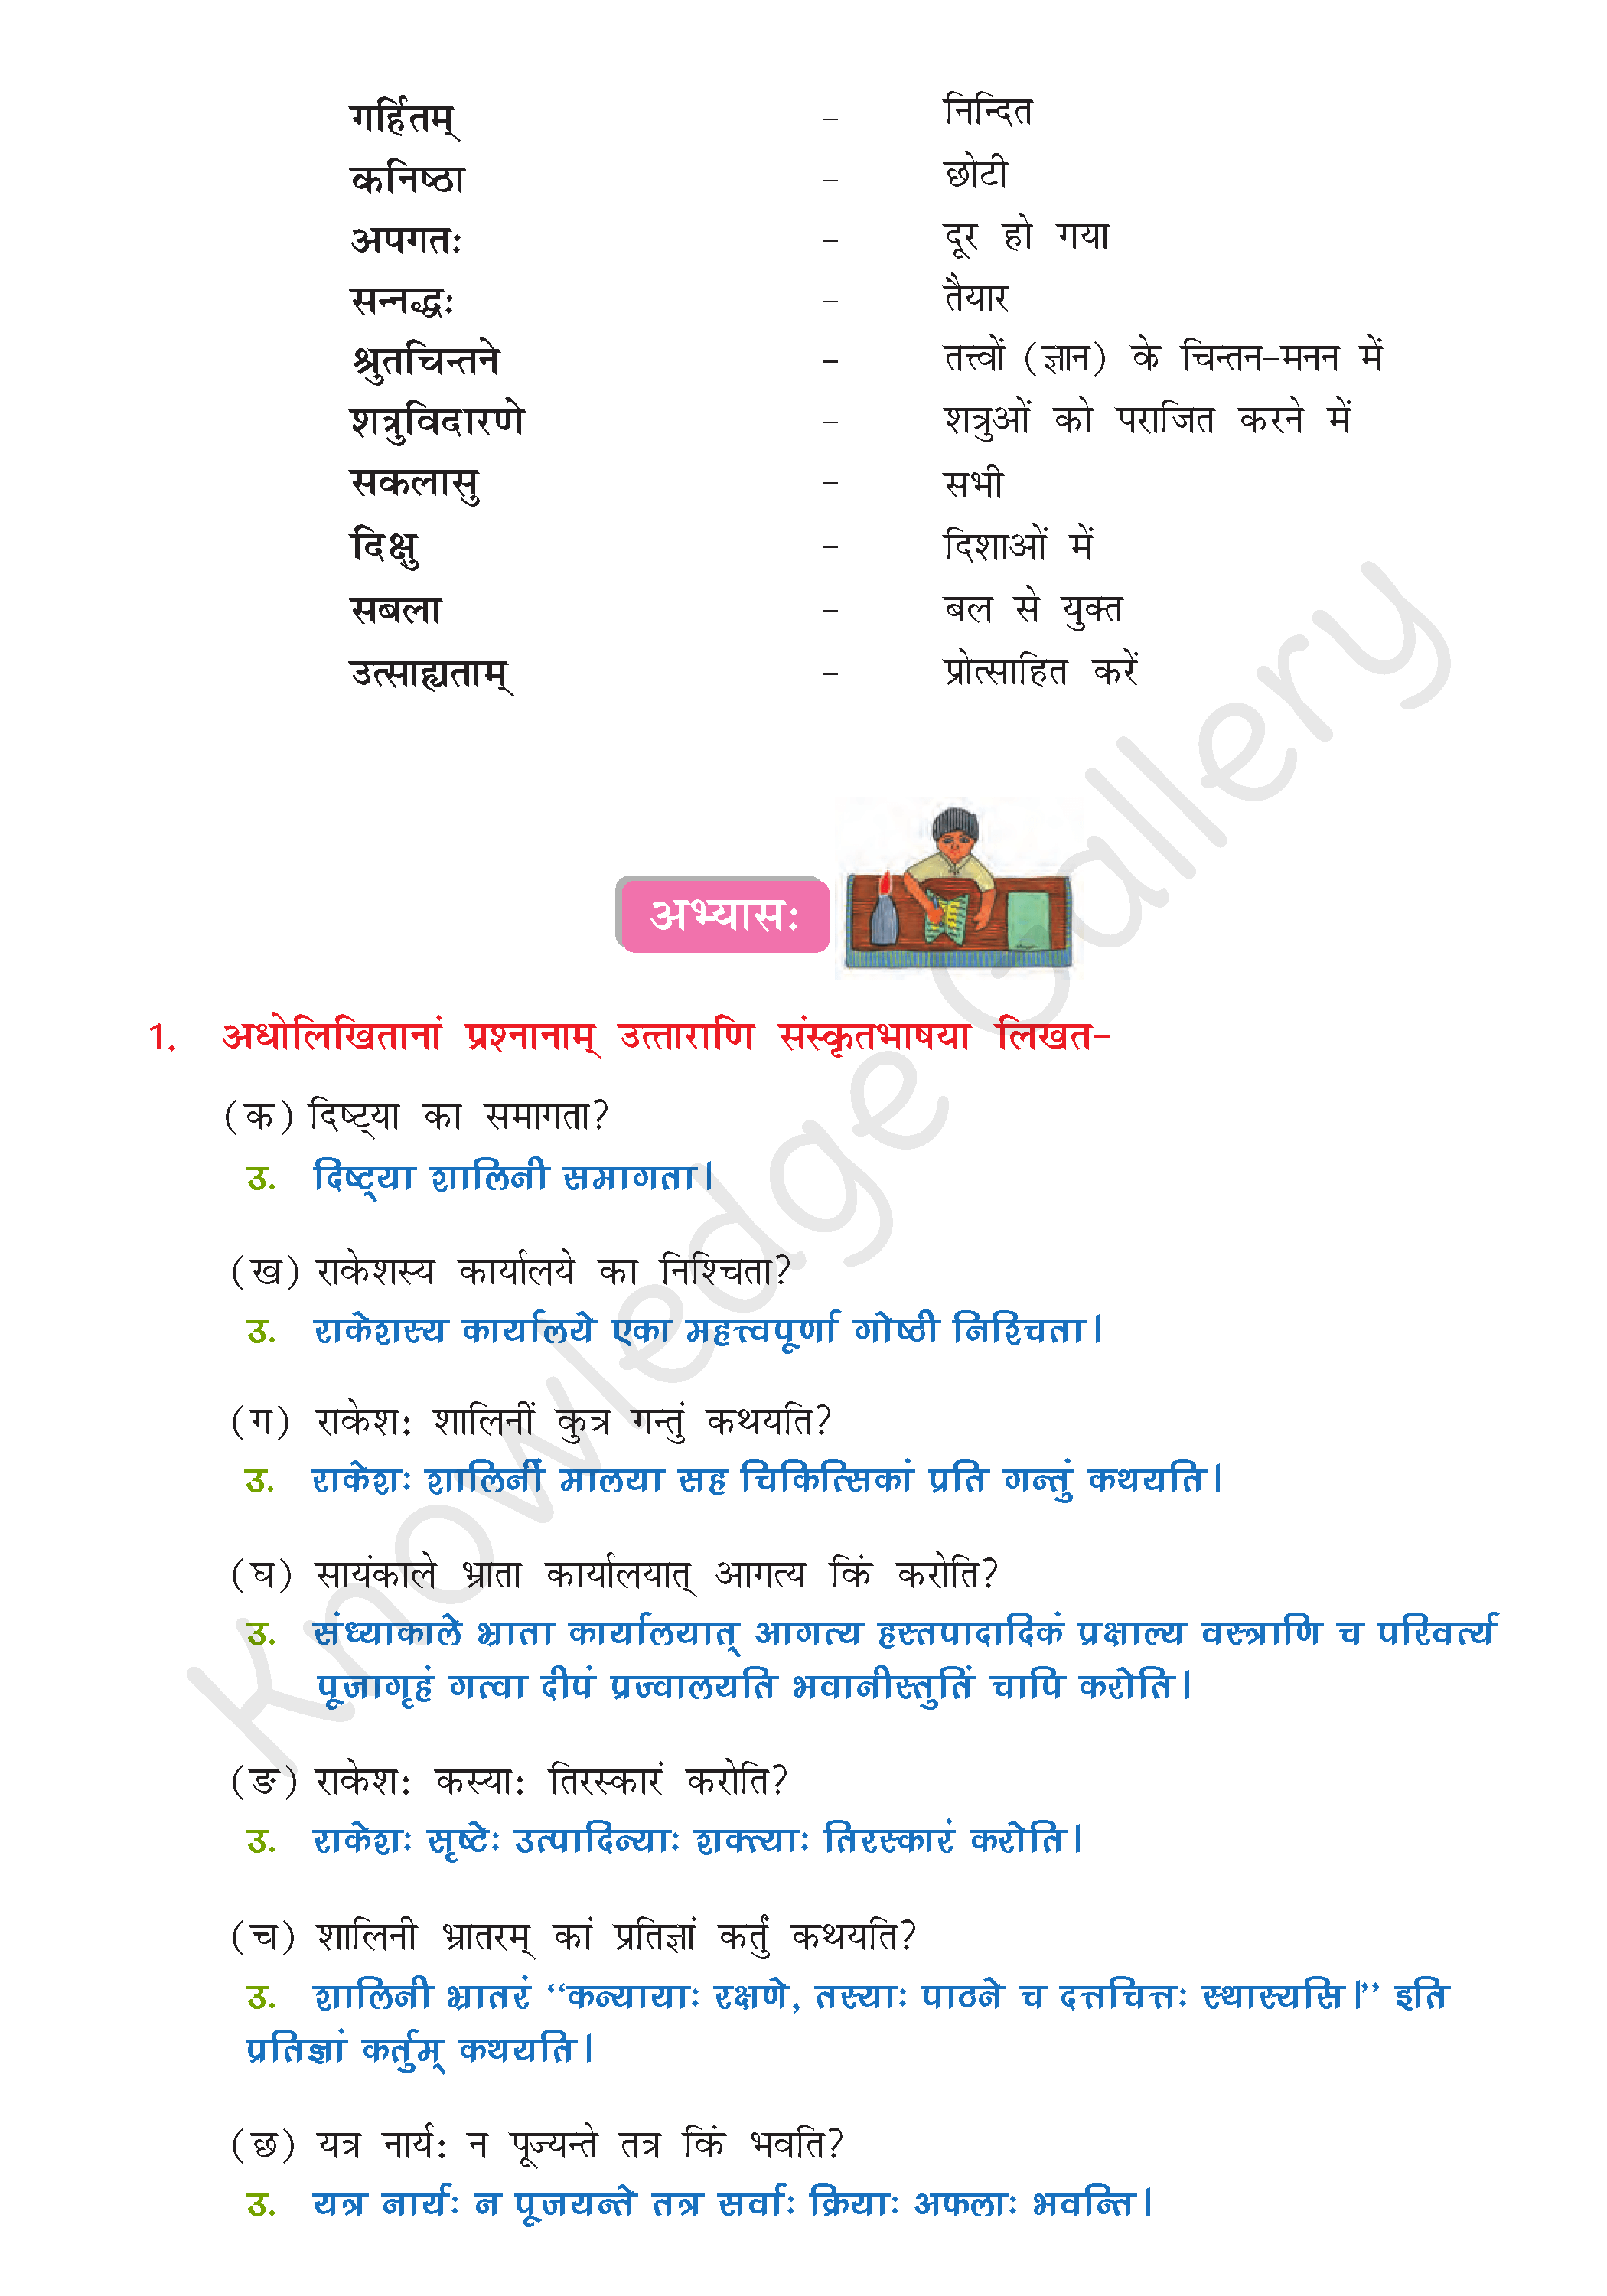 NCERT Solution For Class 8 Sanskrit Chapter 6 part 6